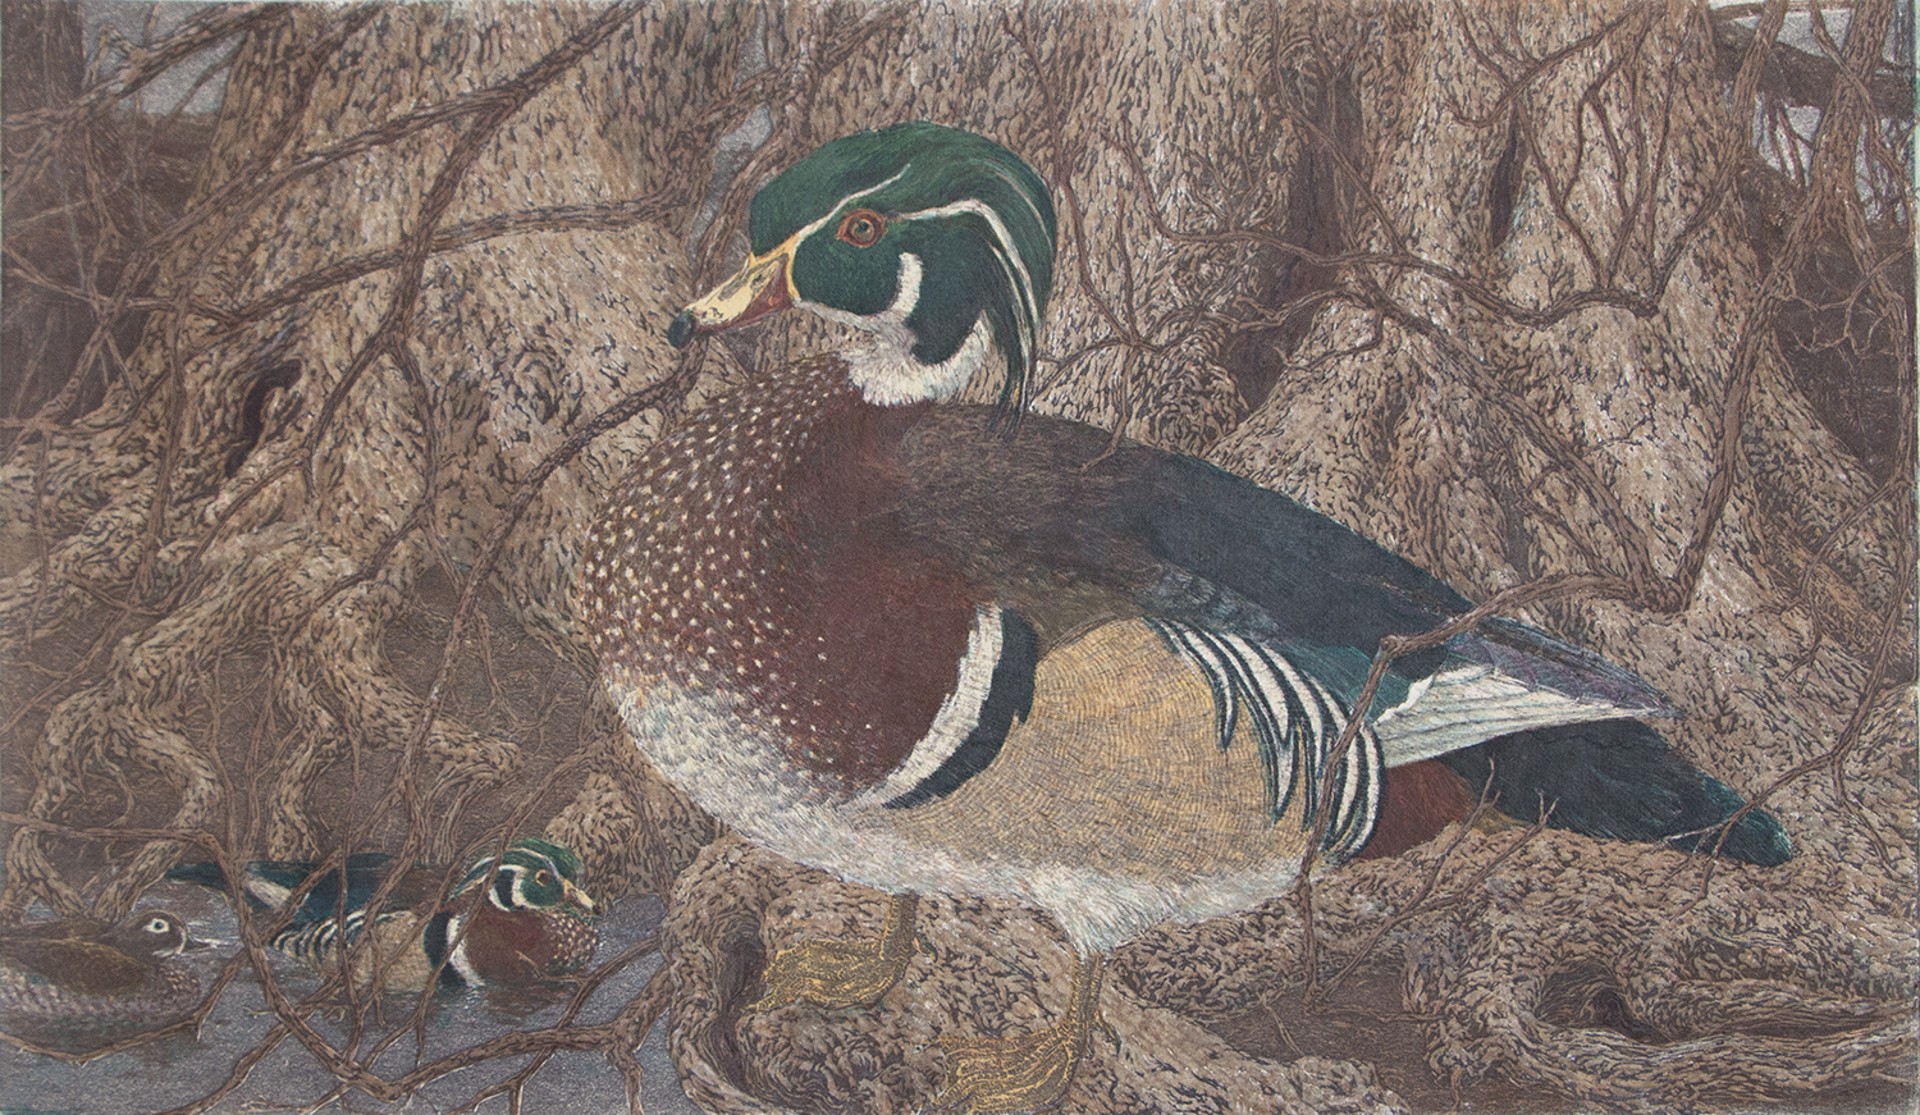 Wood Ducks by Janet Turner